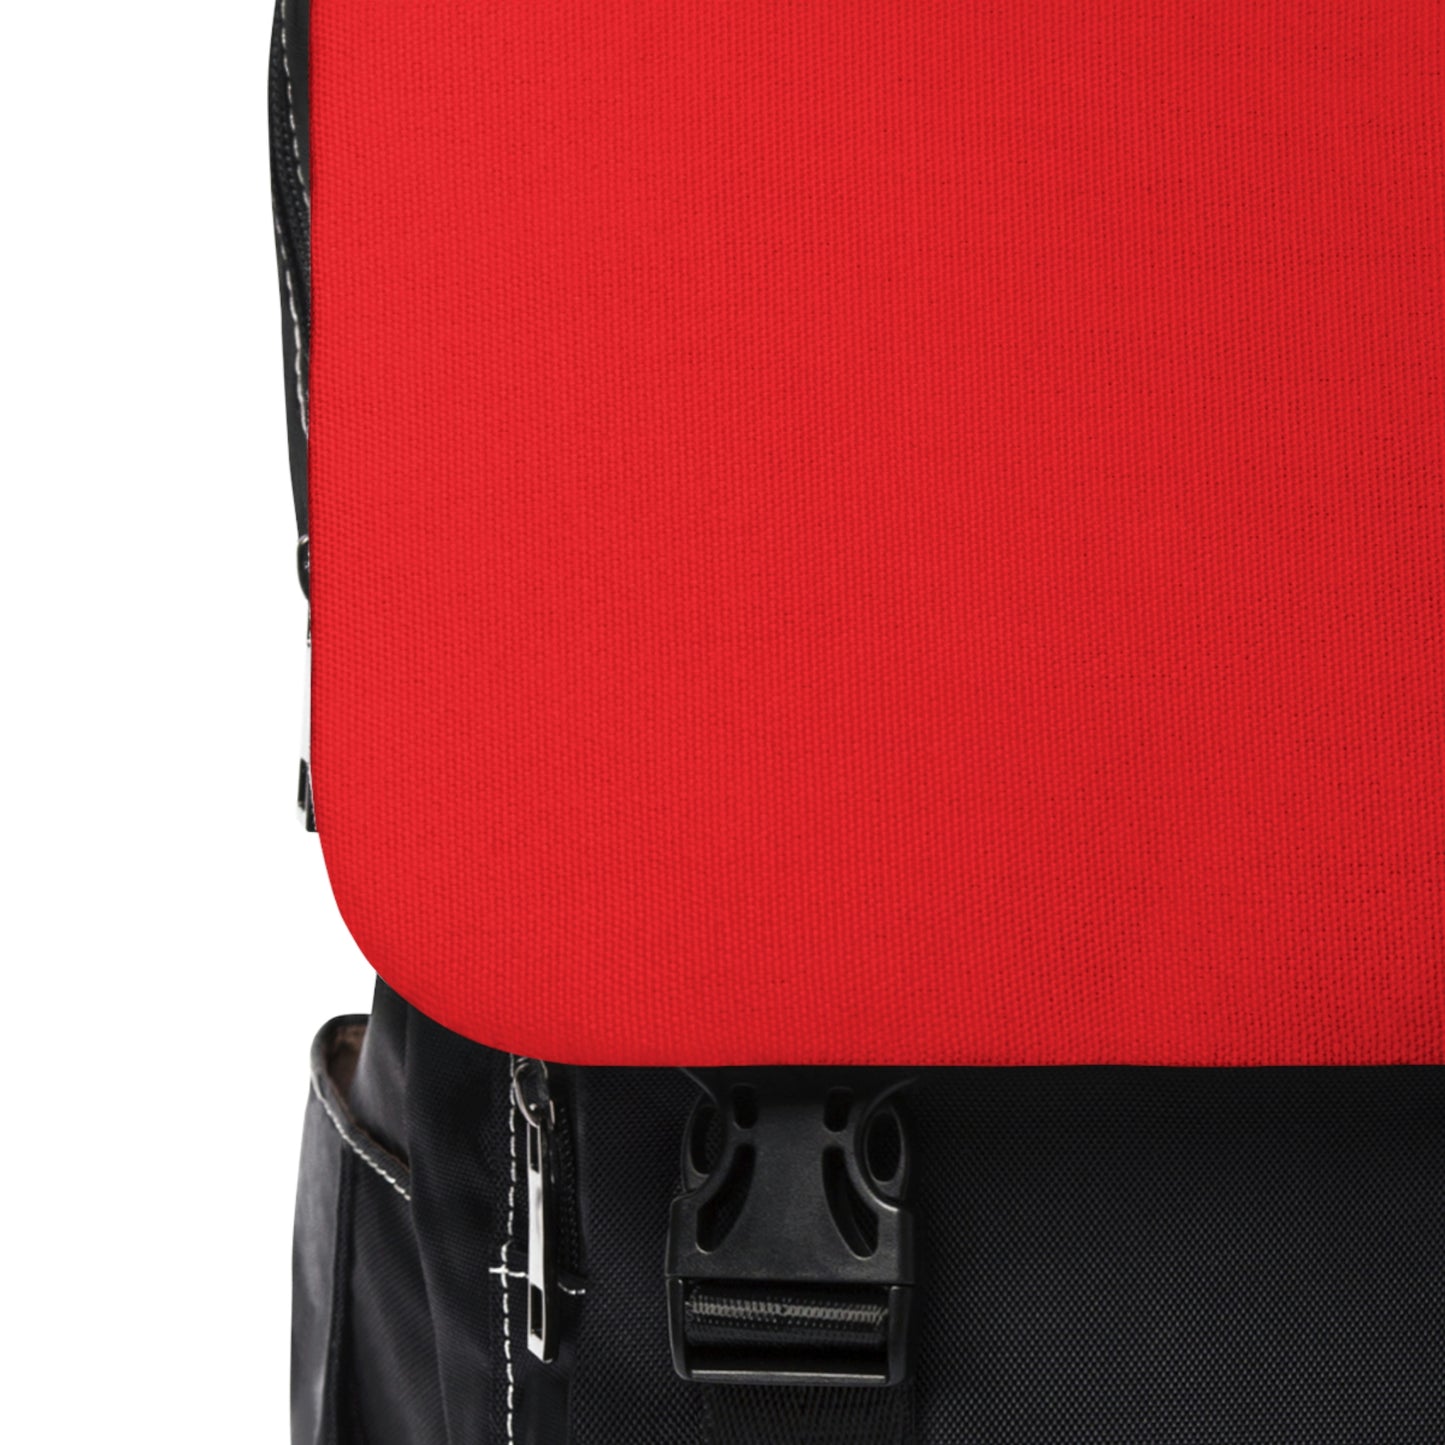 Red/Blk Unisex Casual Shoulder Backpack